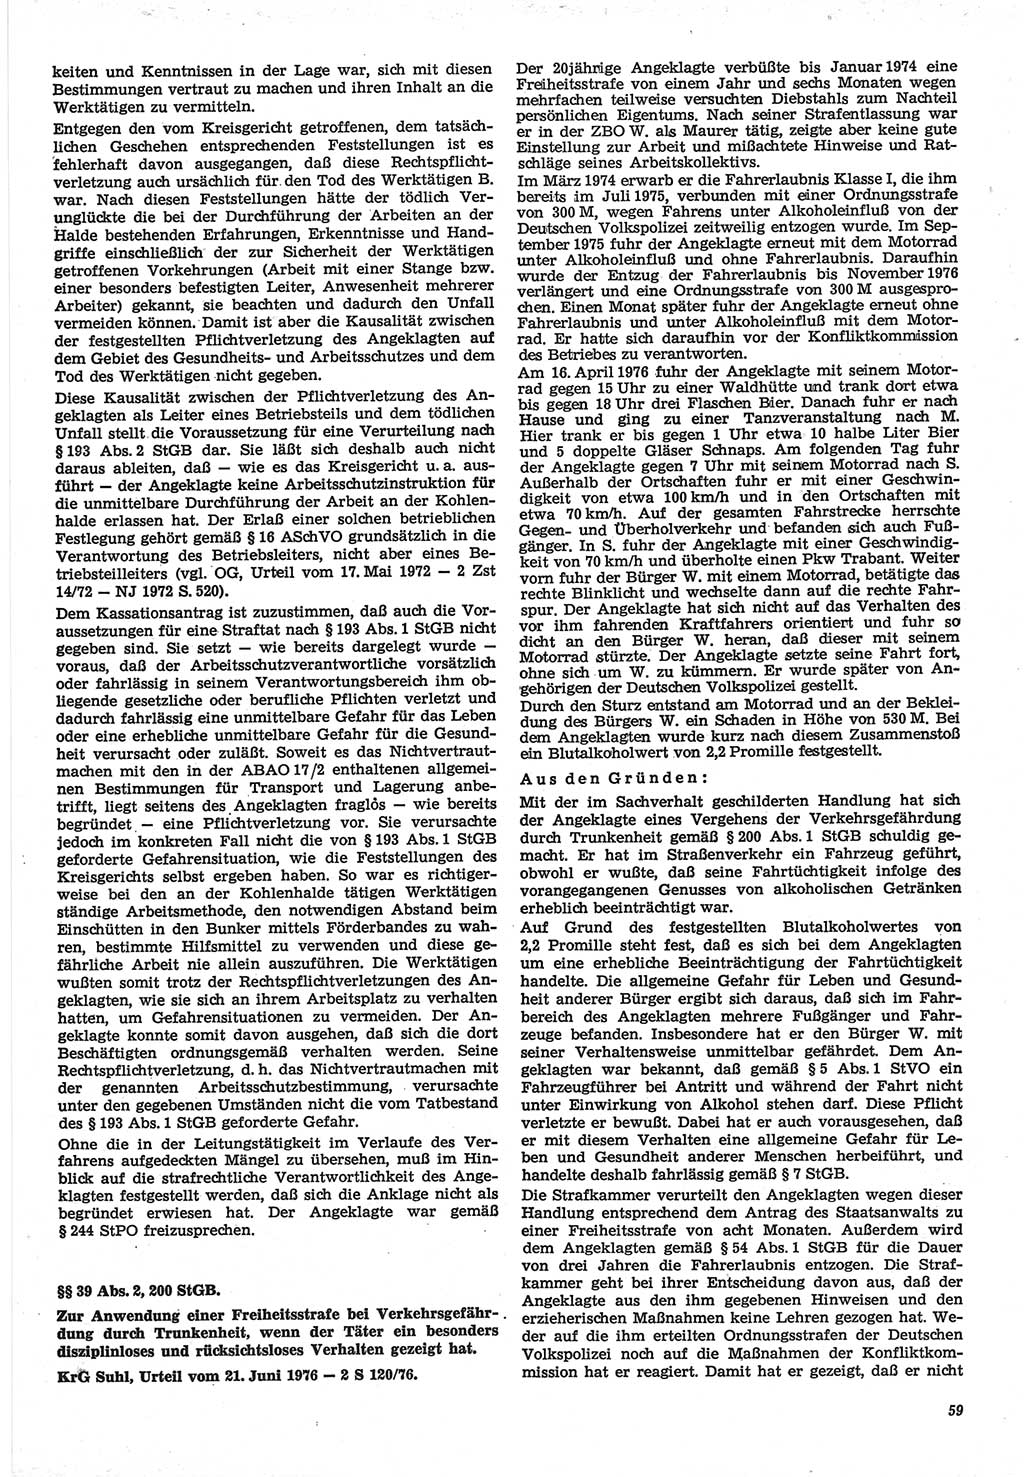 Neue Justiz (NJ), Zeitschrift für Recht und Rechtswissenschaft-Zeitschrift, sozialistisches Recht und Gesetzlichkeit, 31. Jahrgang 1977, Seite 59 (NJ DDR 1977, S. 59)